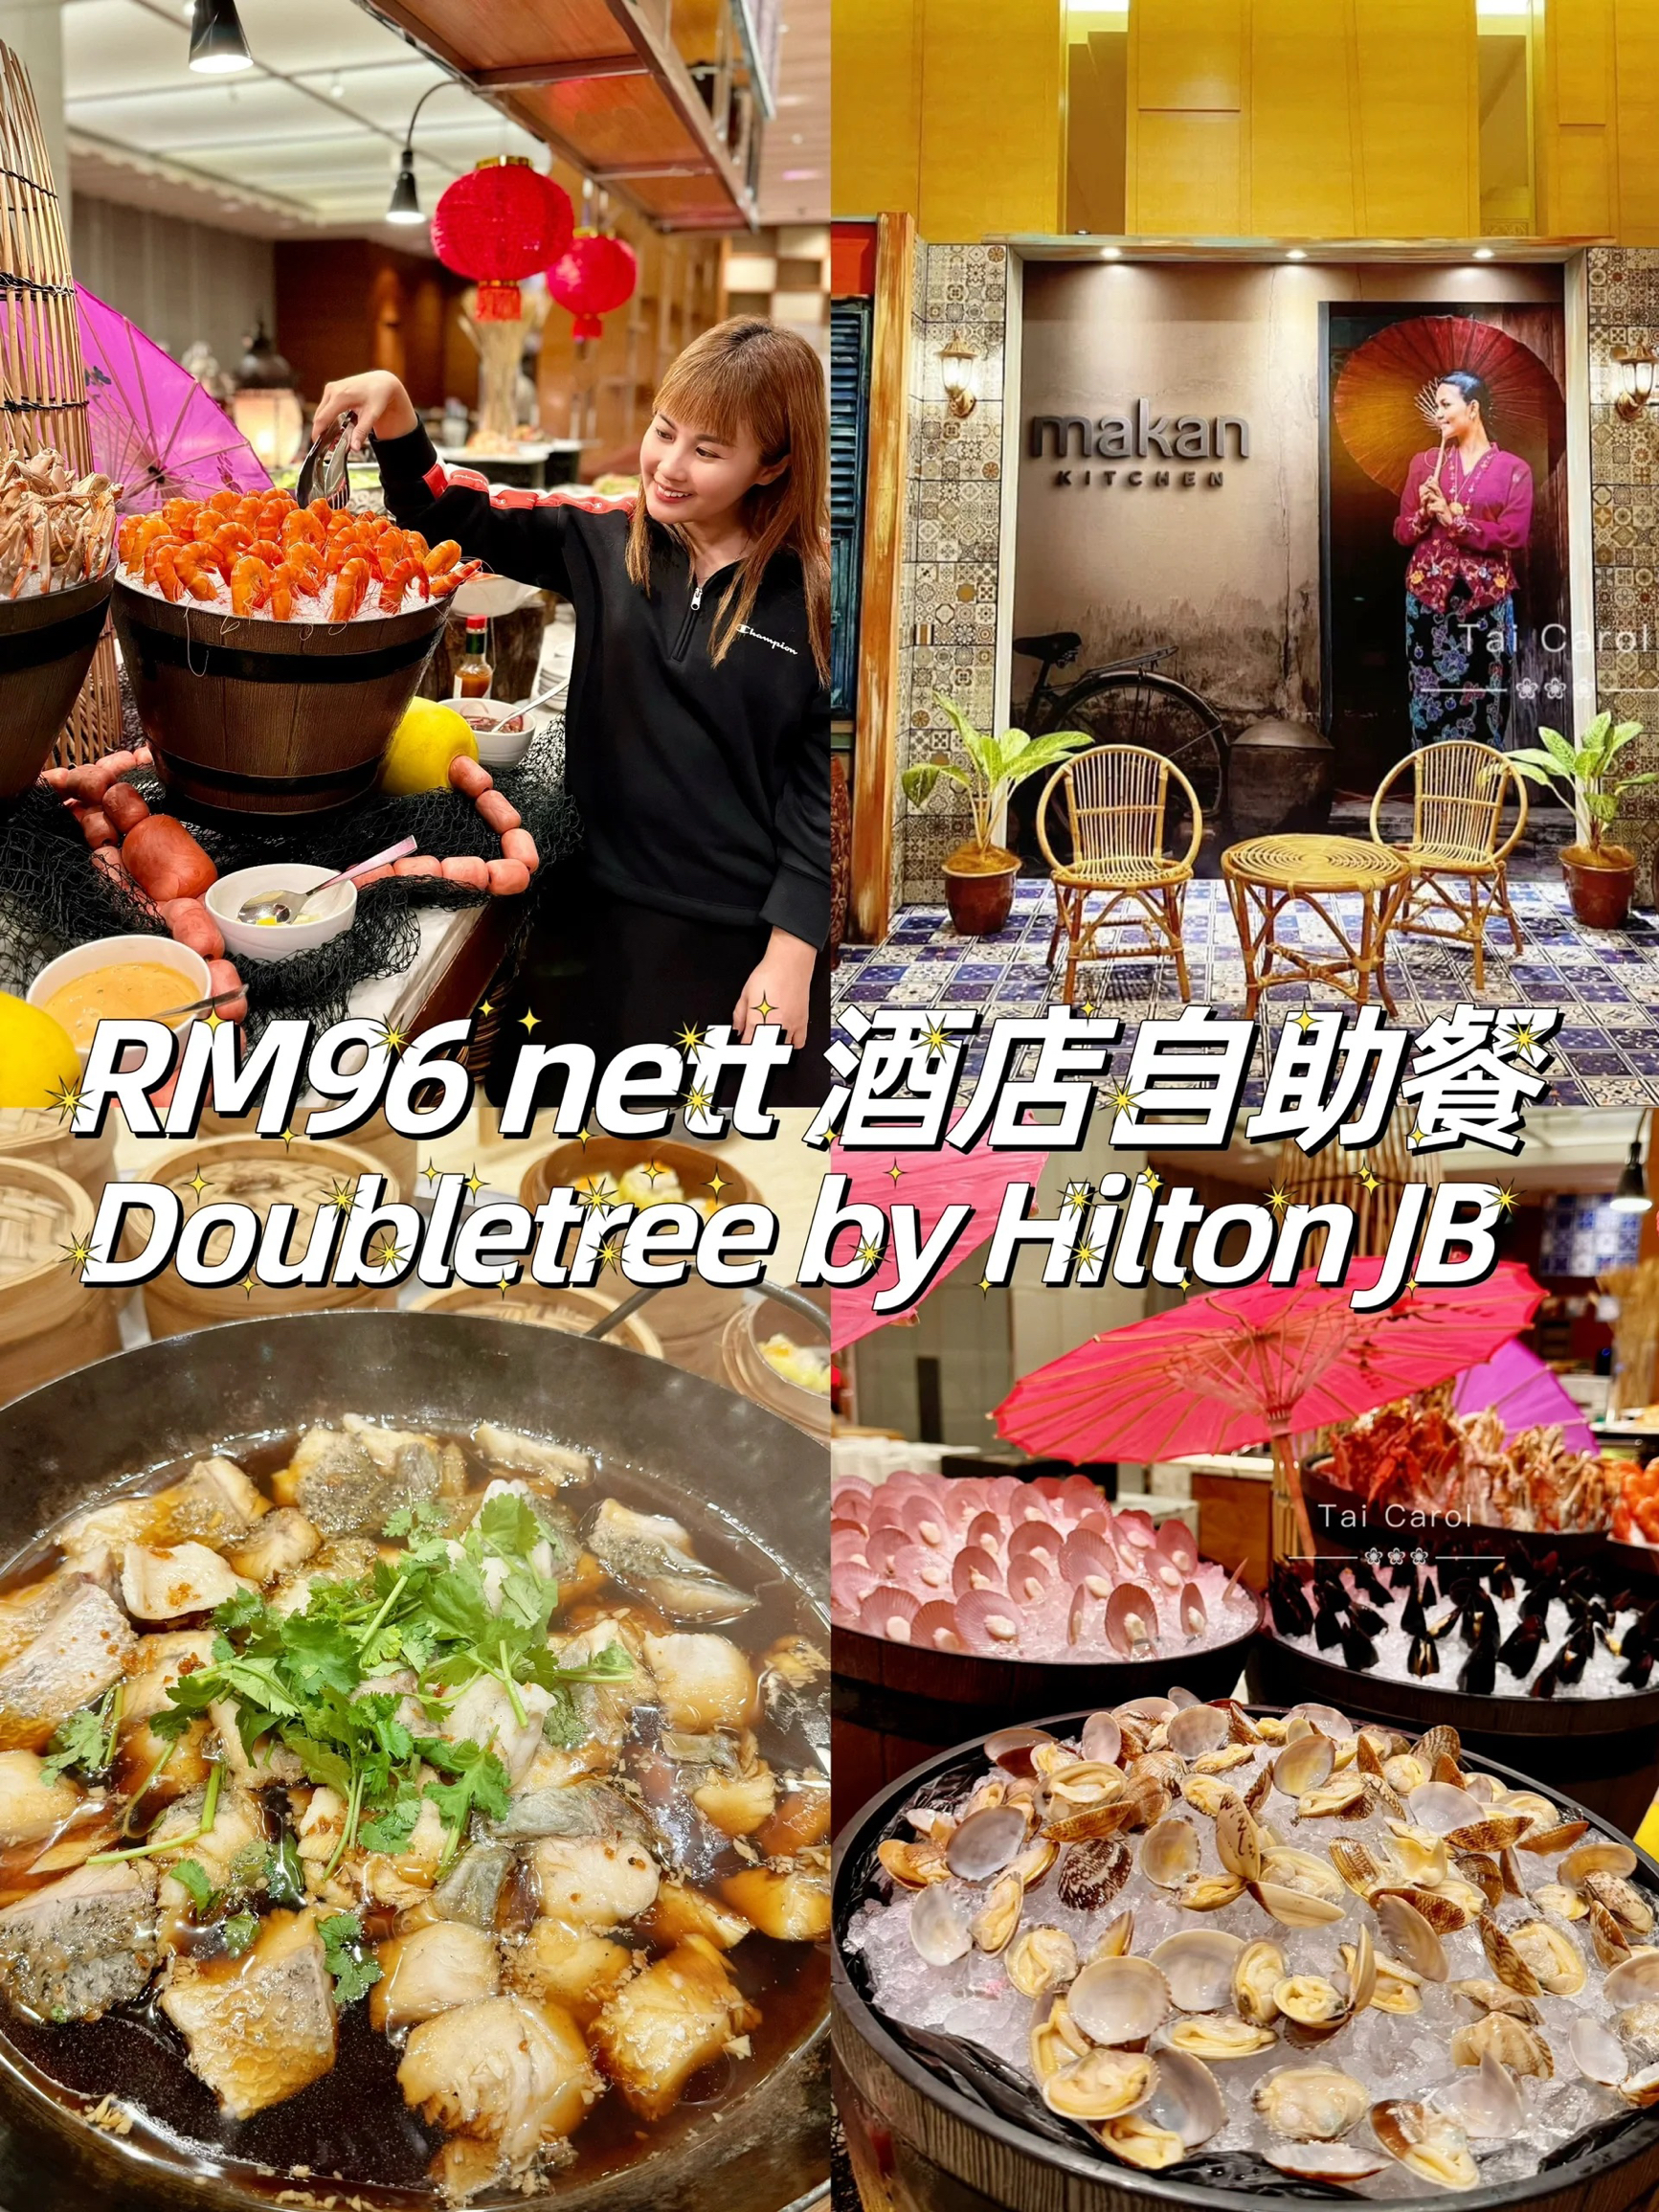 新山酒店自助餐|Doubletree by Hilton尽享马来西亚当地风味美食  有买3送1限时优